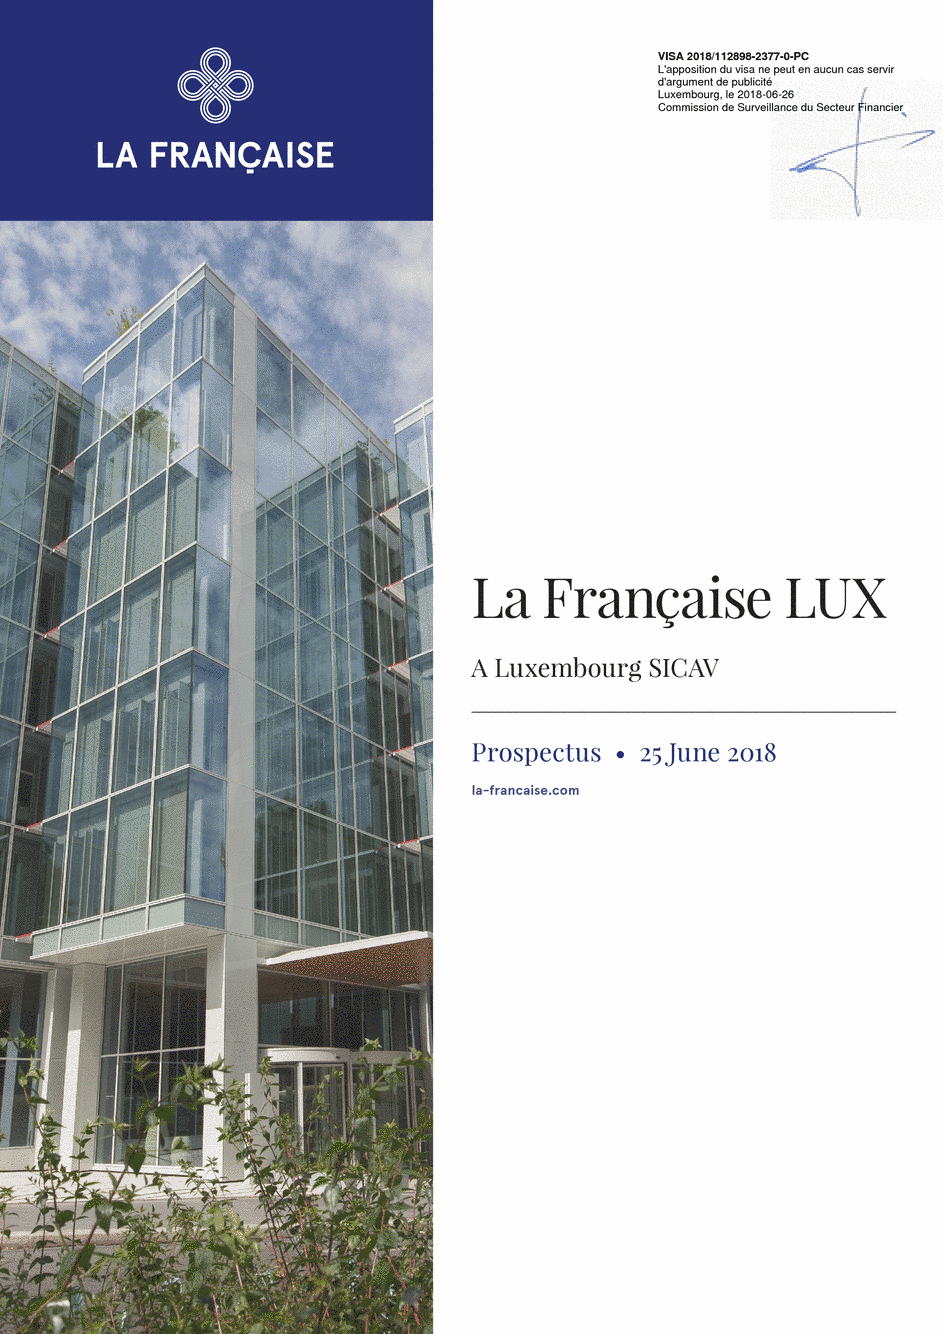 Prospectus La Française LUX - Inflection Point Zero Carbon - Class Partage - Green Cross (C) EUR - 25/06/2018 - Anglais